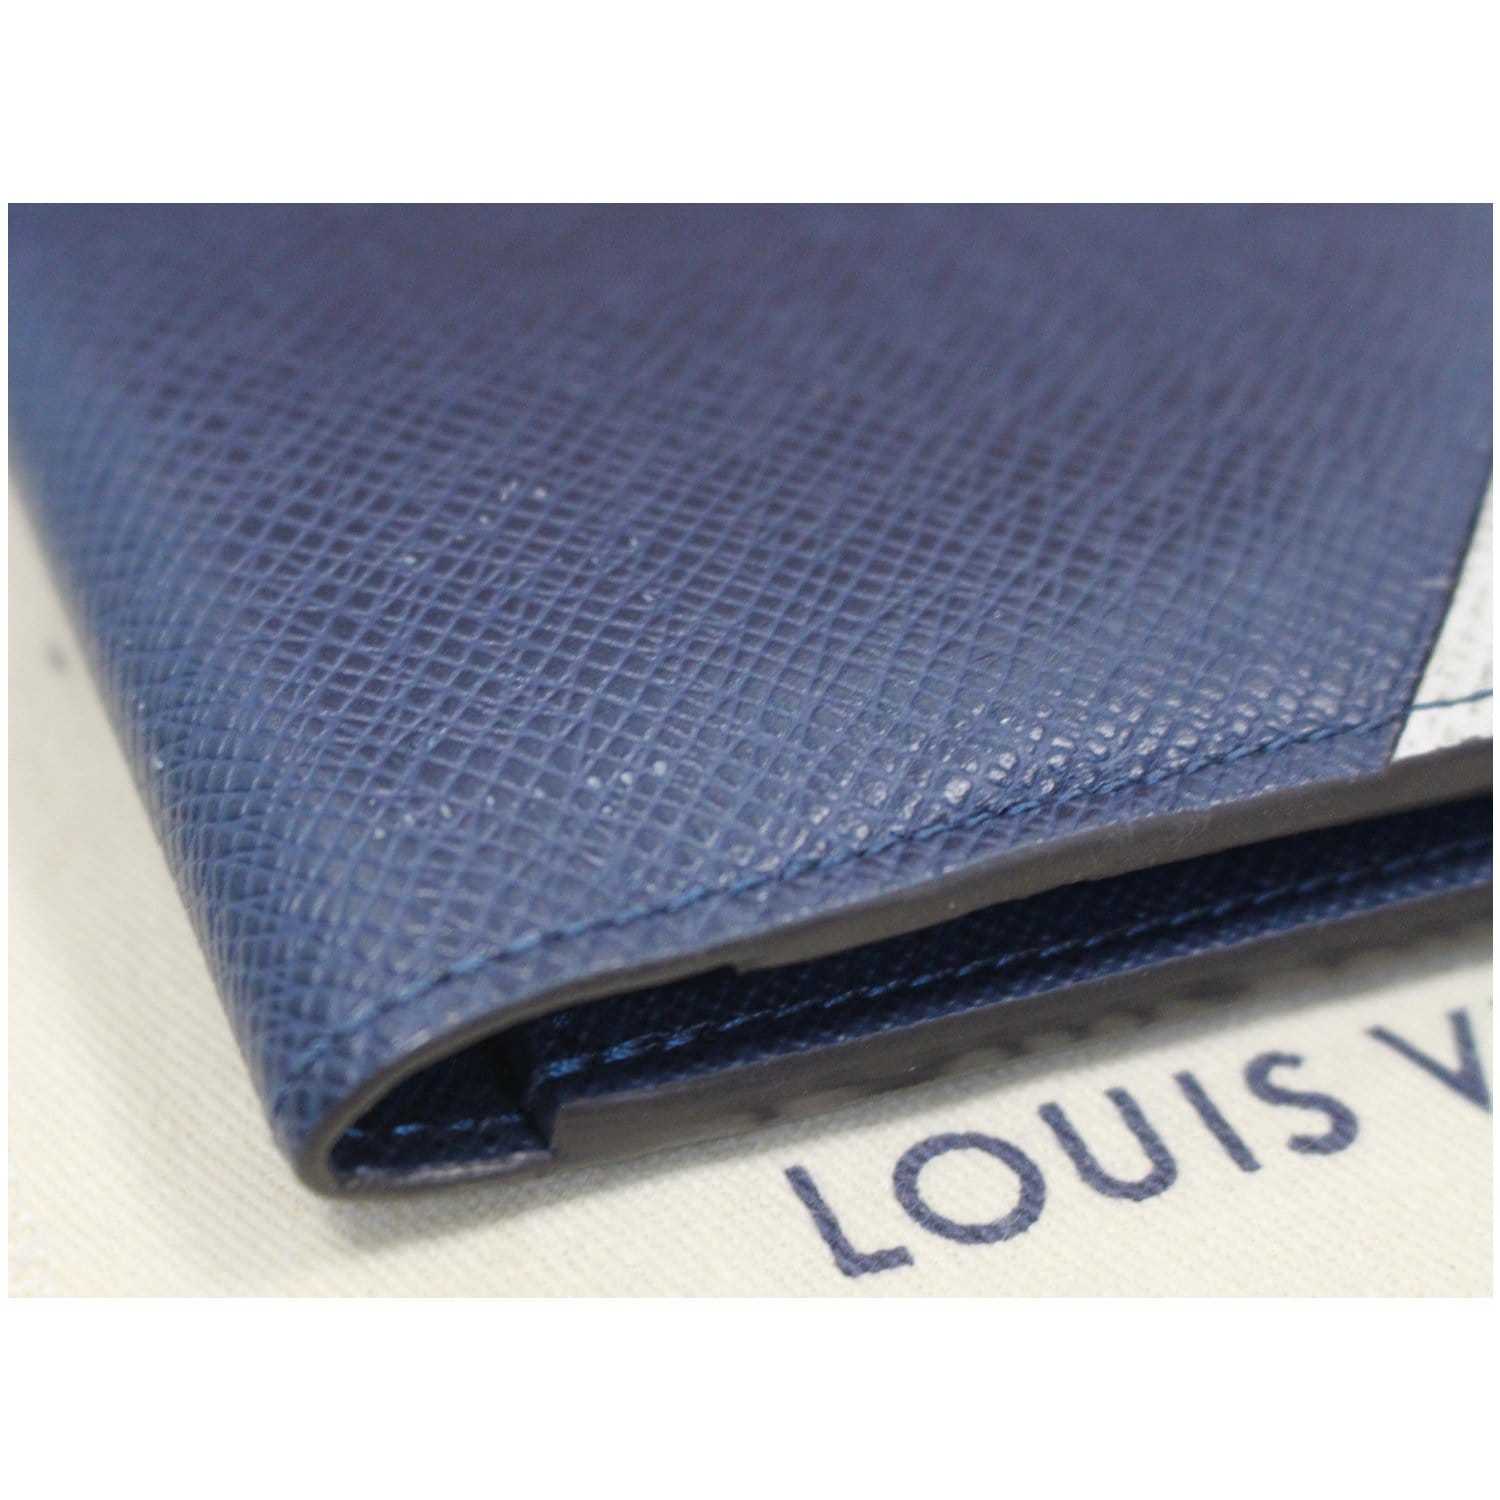 The Best Louis Vuitton Wallets